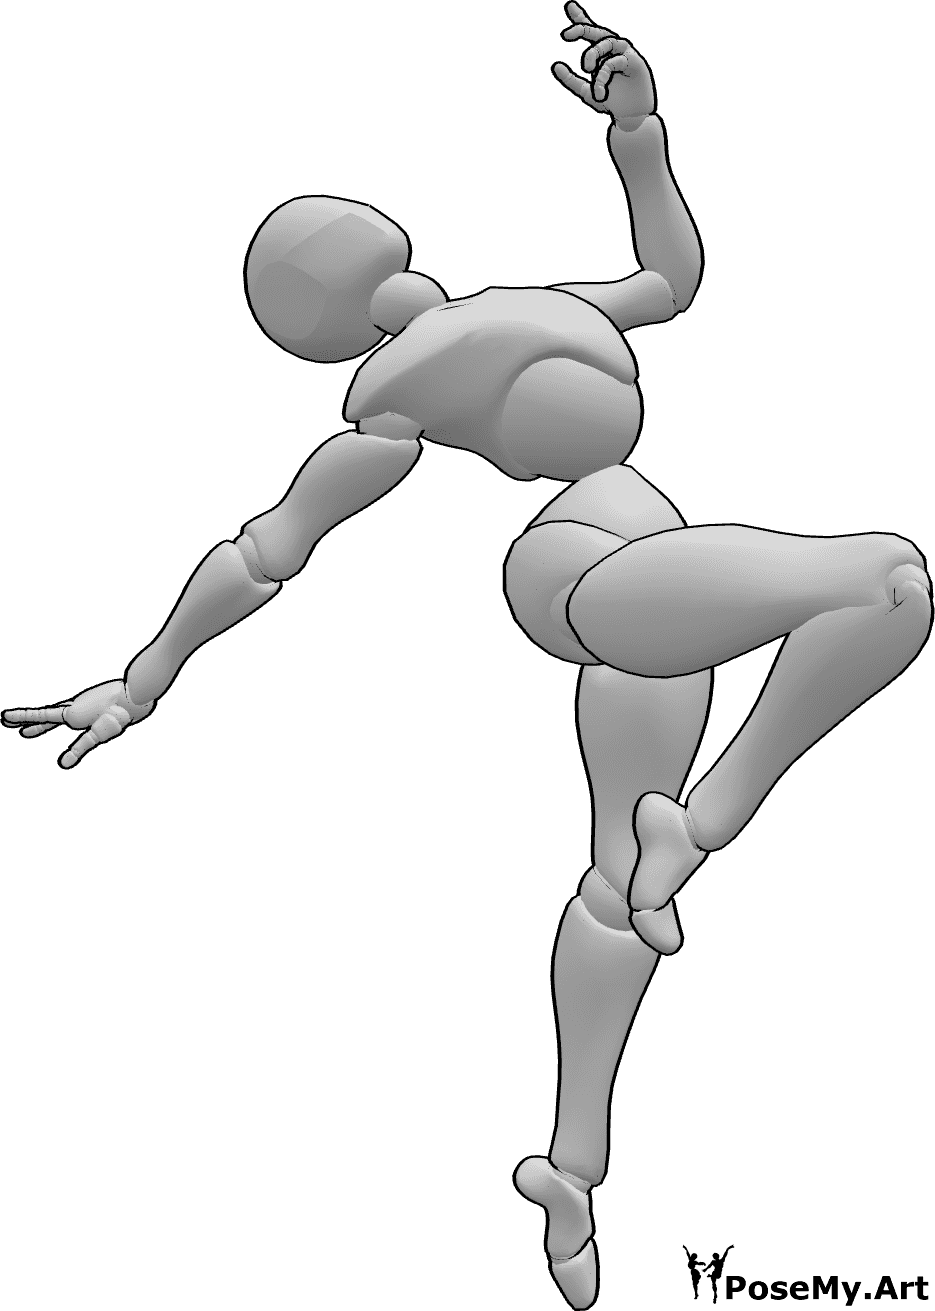 Referência de poses- Pose de salto acrobático estético - Pose estética de salto acrobático no ar